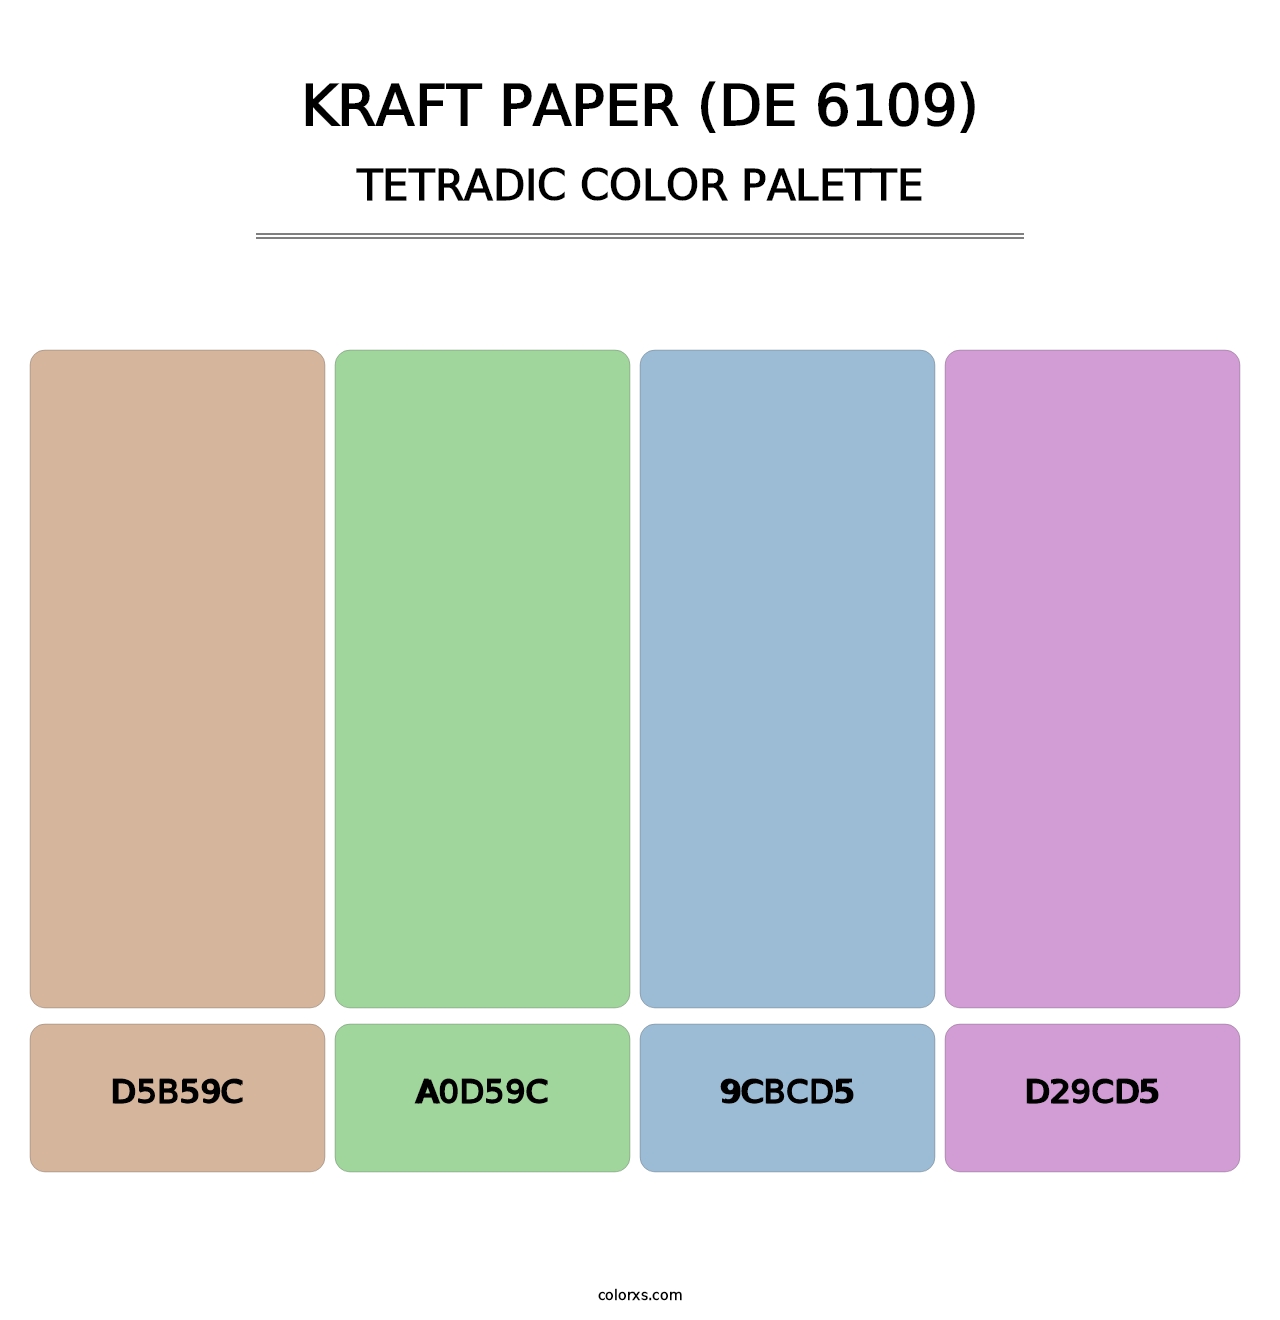 Kraft Paper (DE 6109) - Tetradic Color Palette